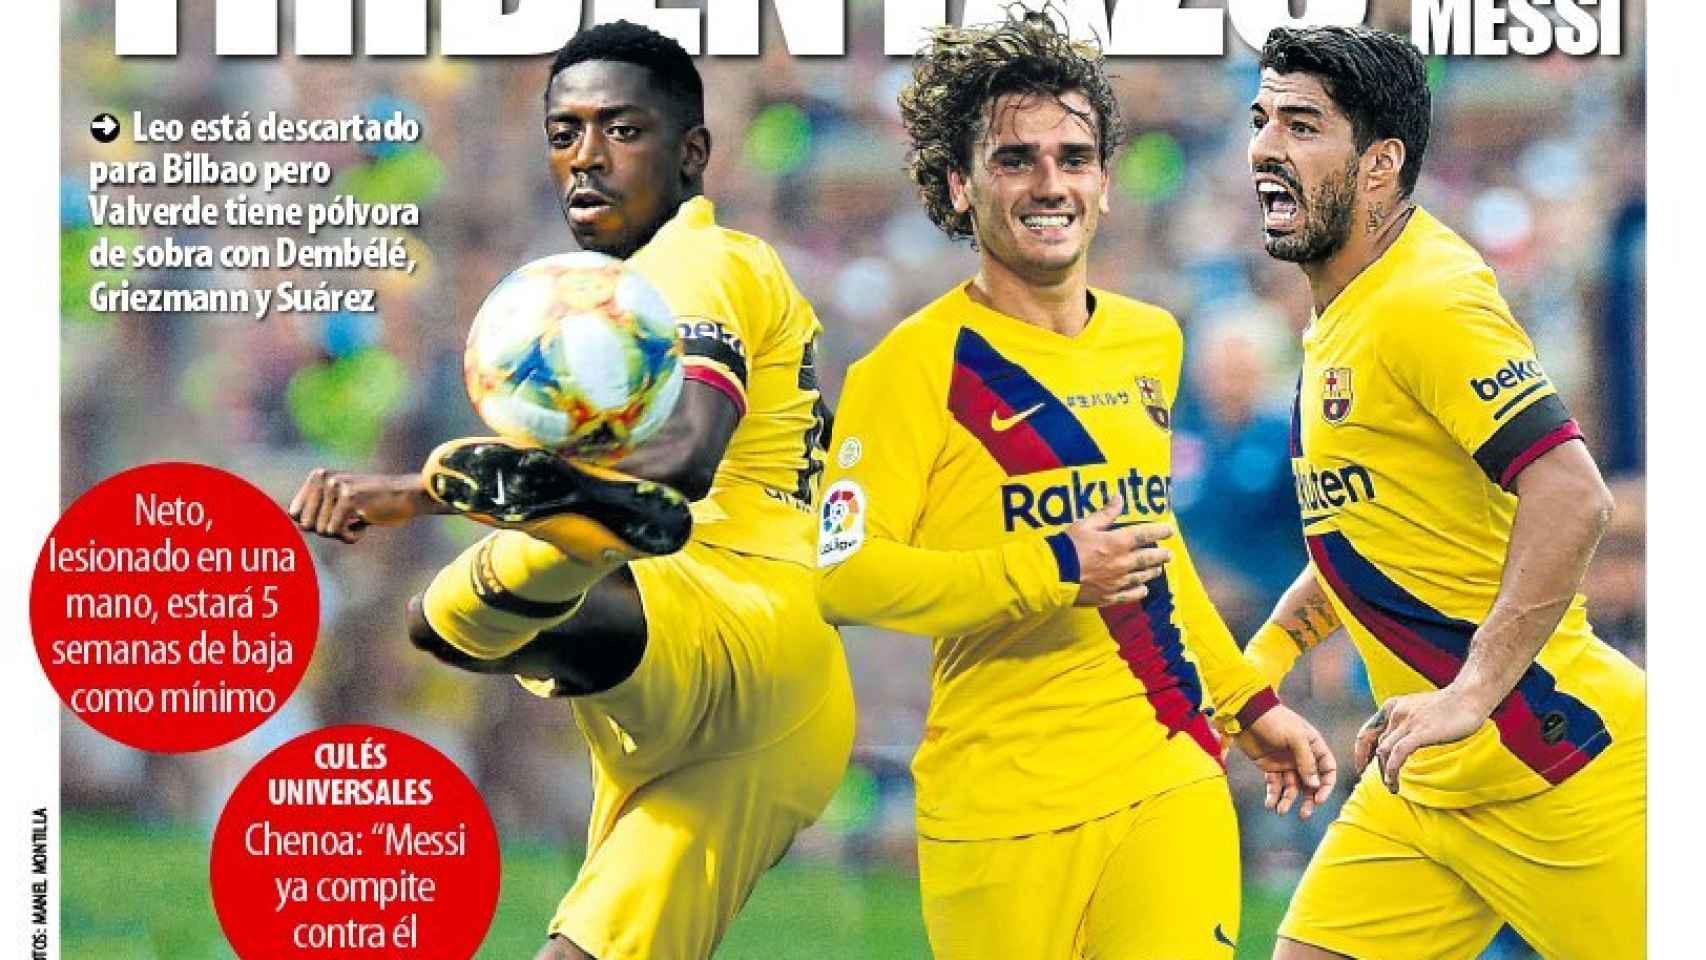 La portada del diario Mundo Deportivo (12/08/2019)